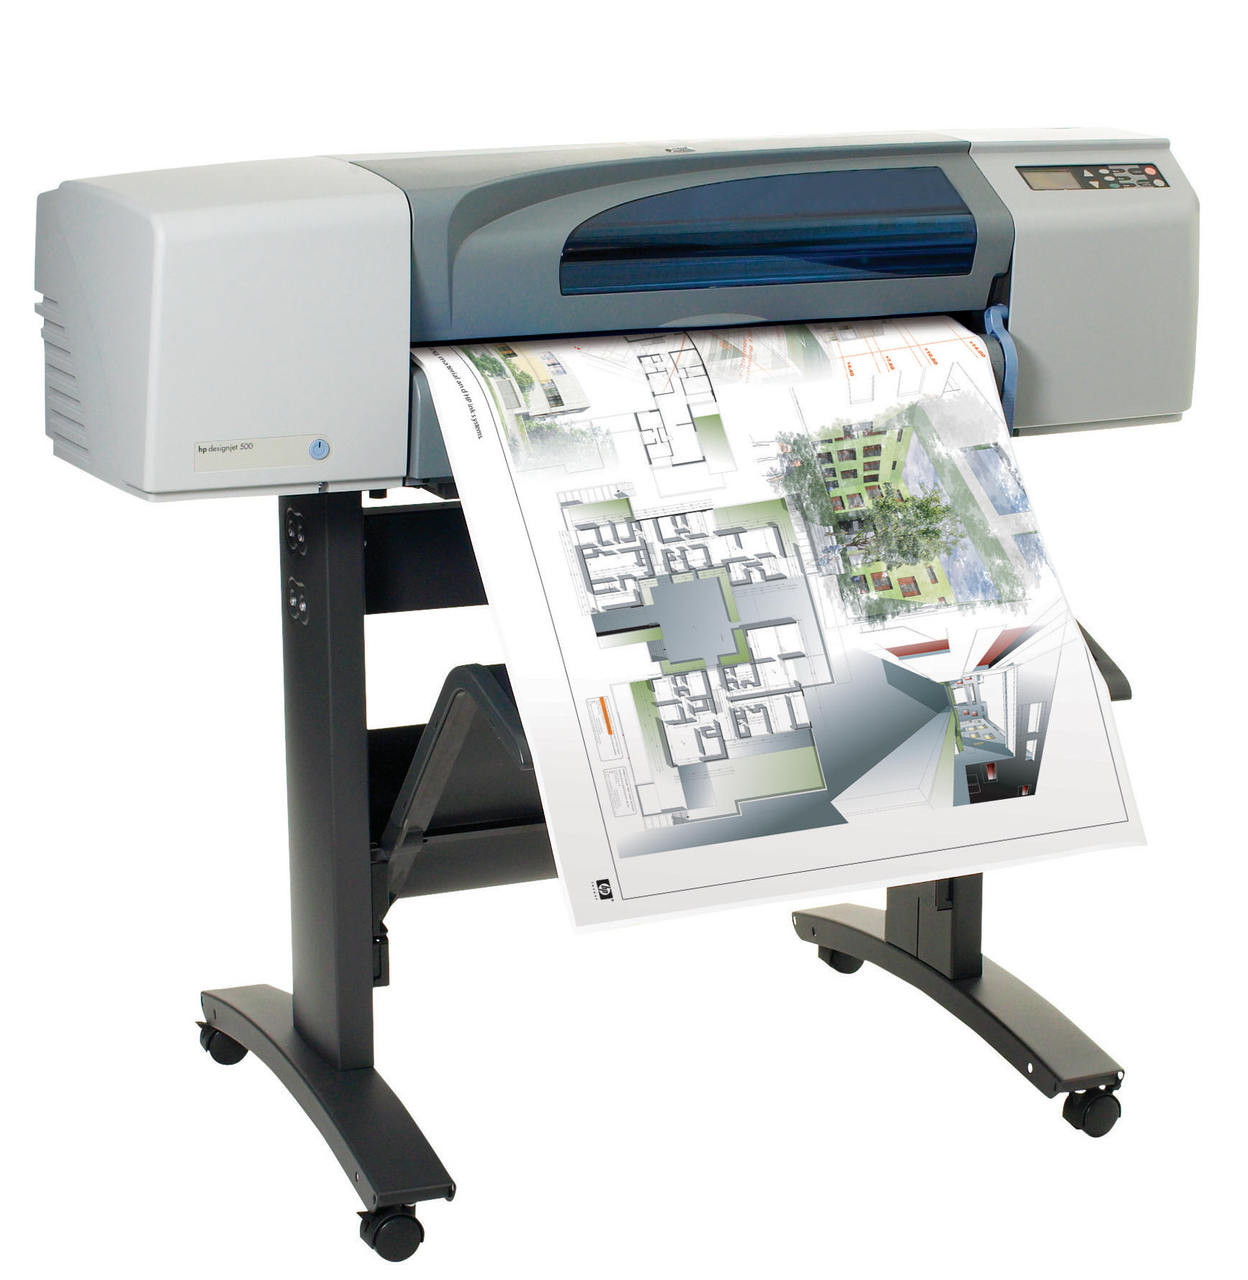 HP Designjet 500 Series Printers - MTech distributor